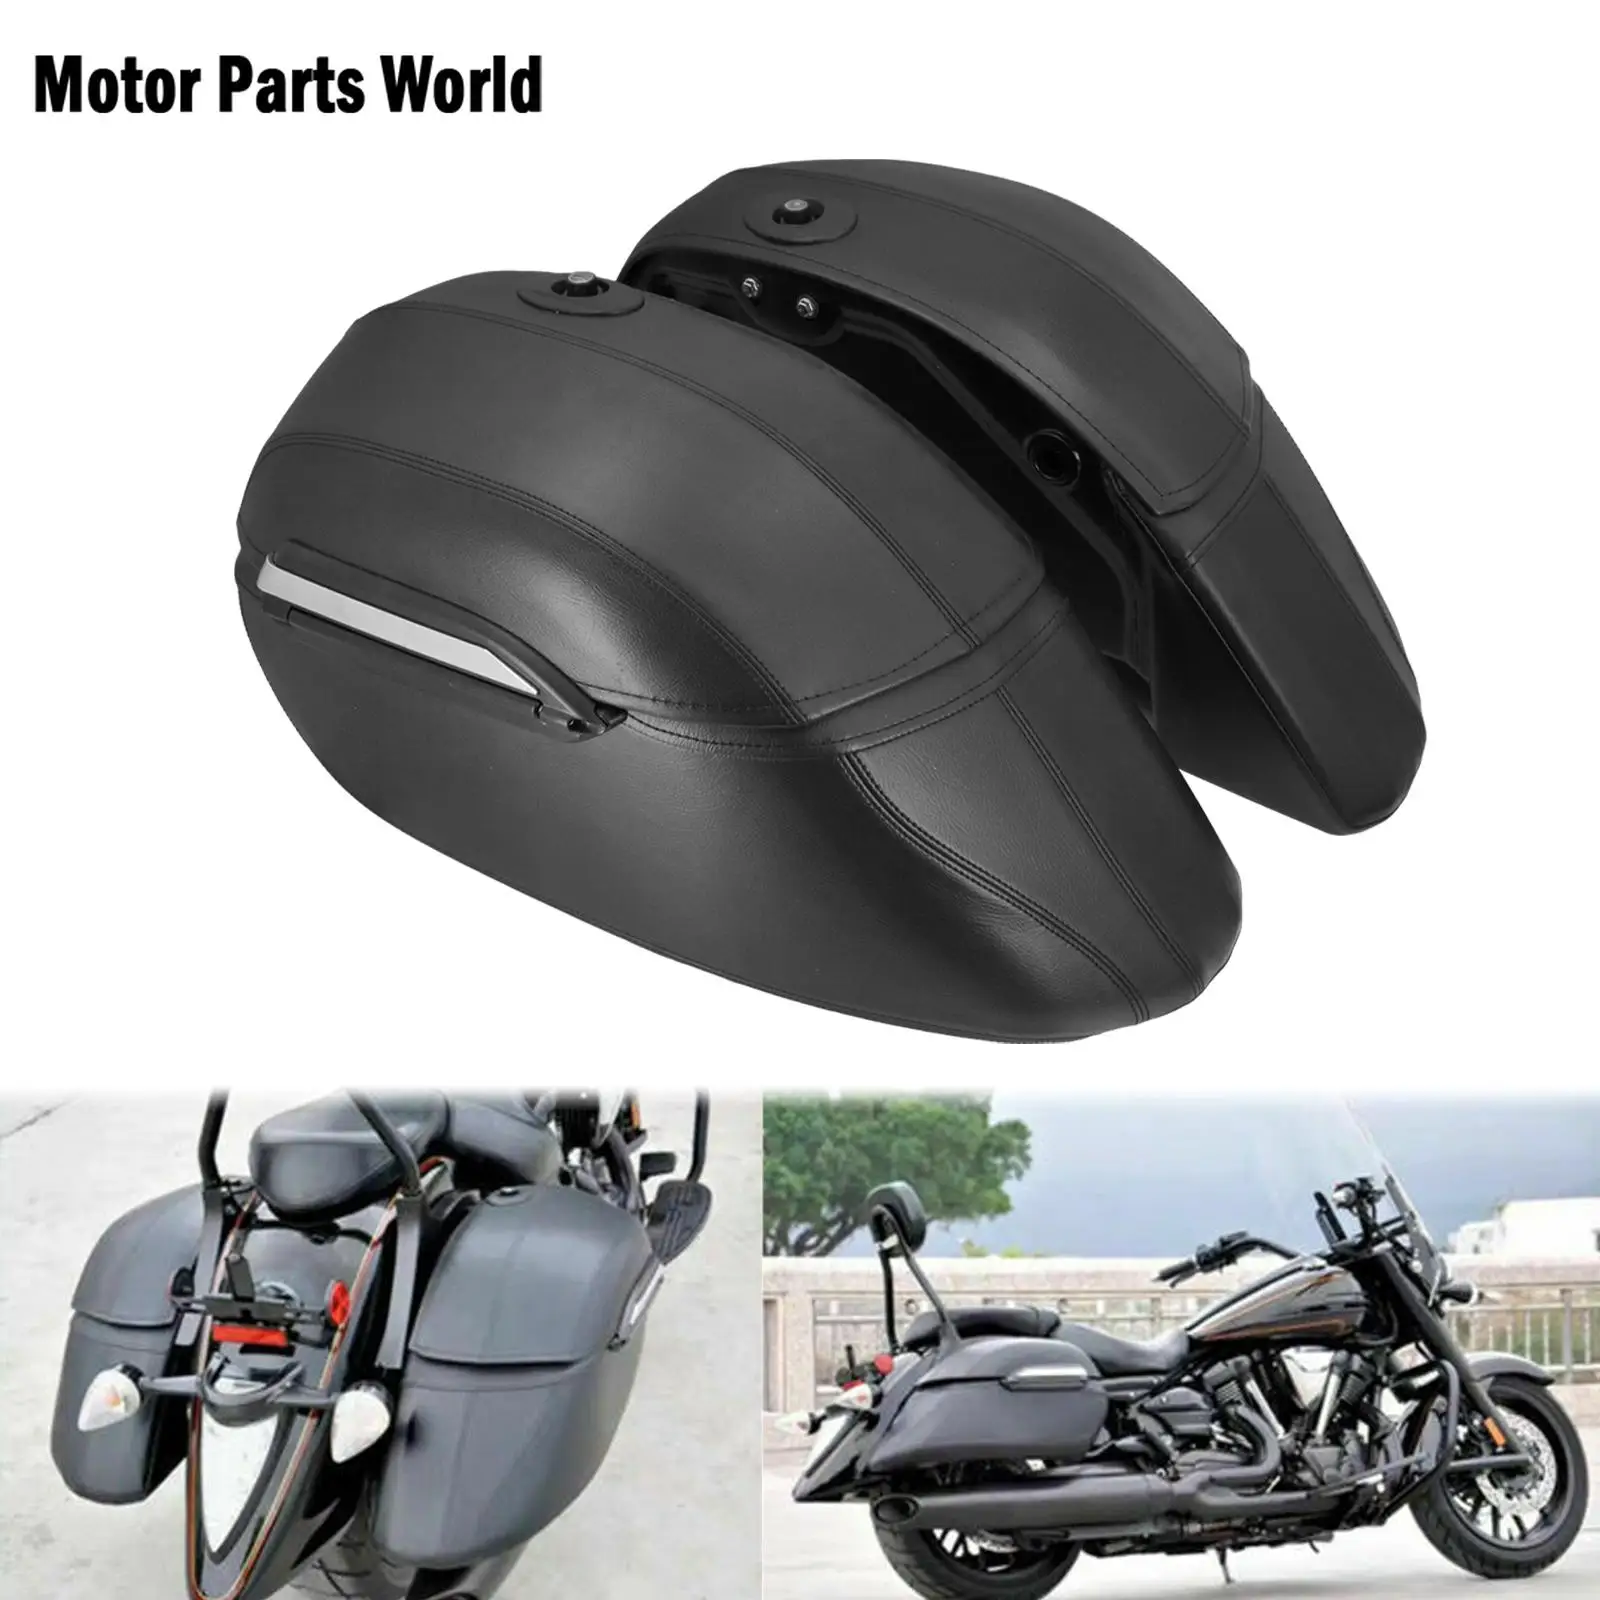 Alforjas universales clásicas para motocicleta, alforjas y montaje resistente, color negro, para Kawasaki, Honda, Harley, Touring y Softail